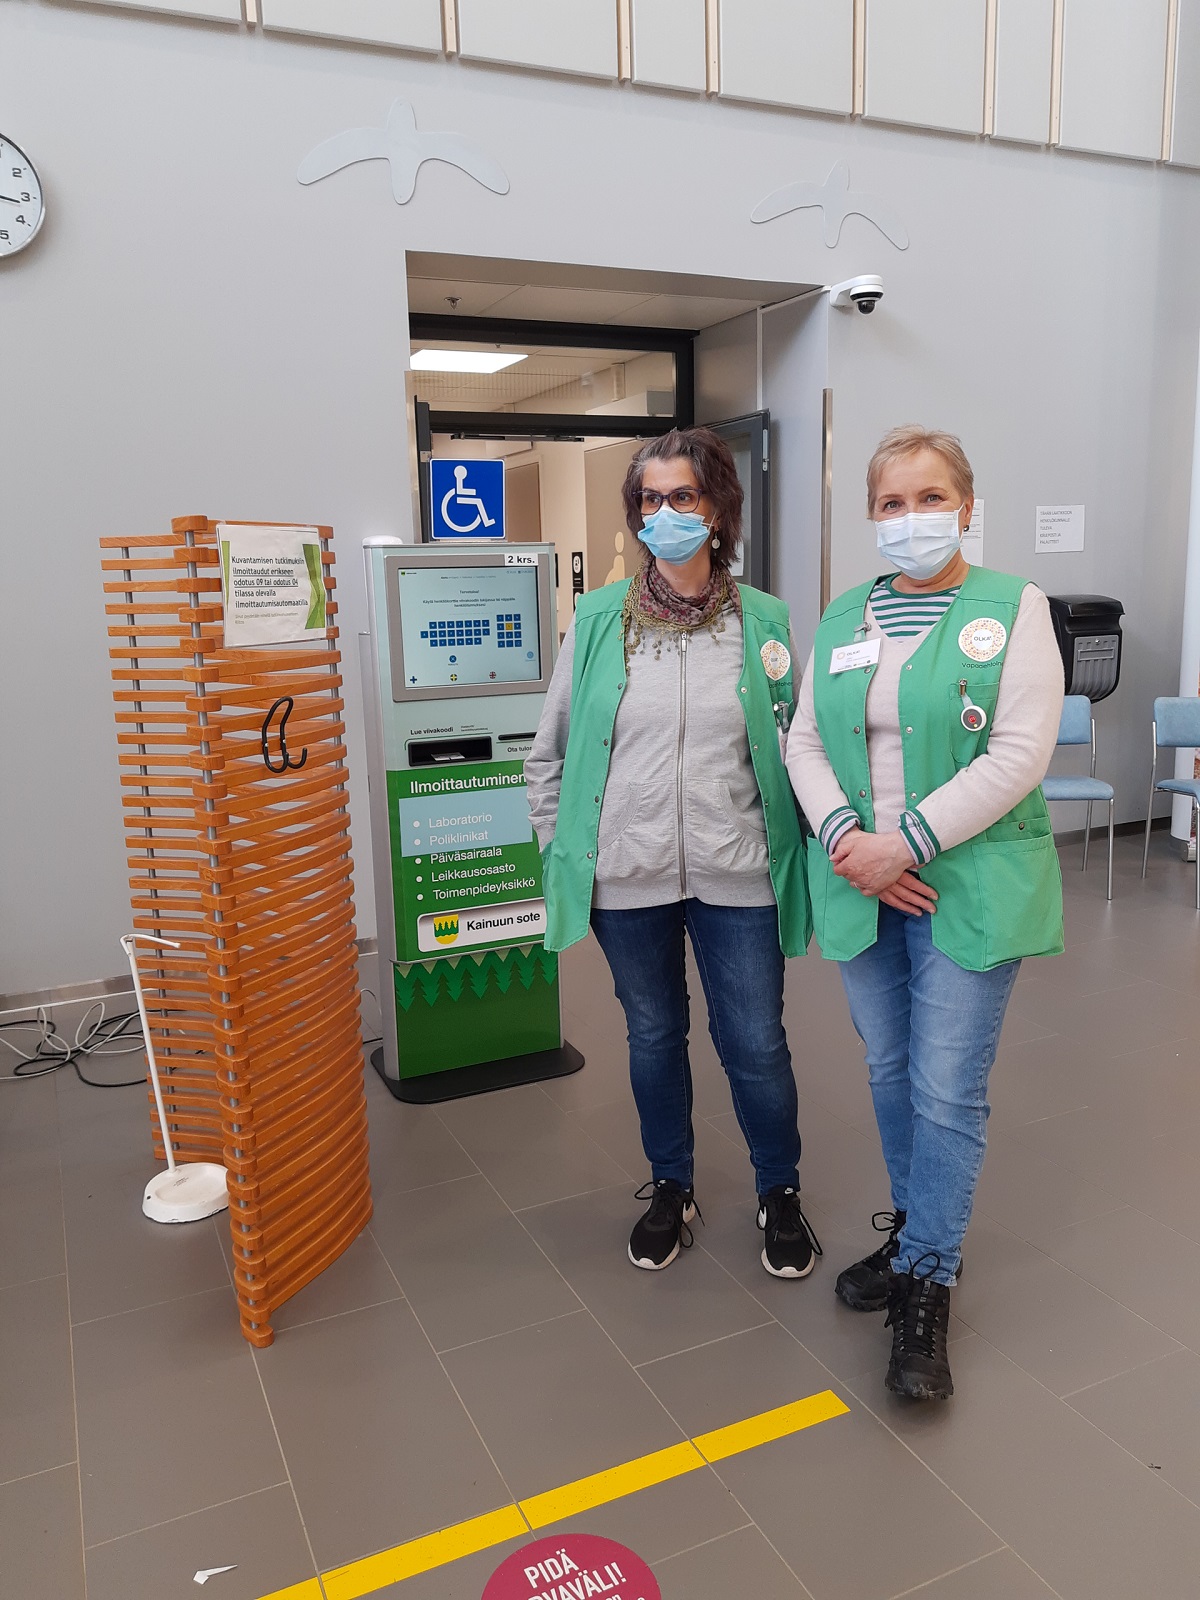 Uudet OLKA-vapaaehtoiset valmiina opastamaan sairaalan asiakkaita ilmoitusautomaattien käytössä.